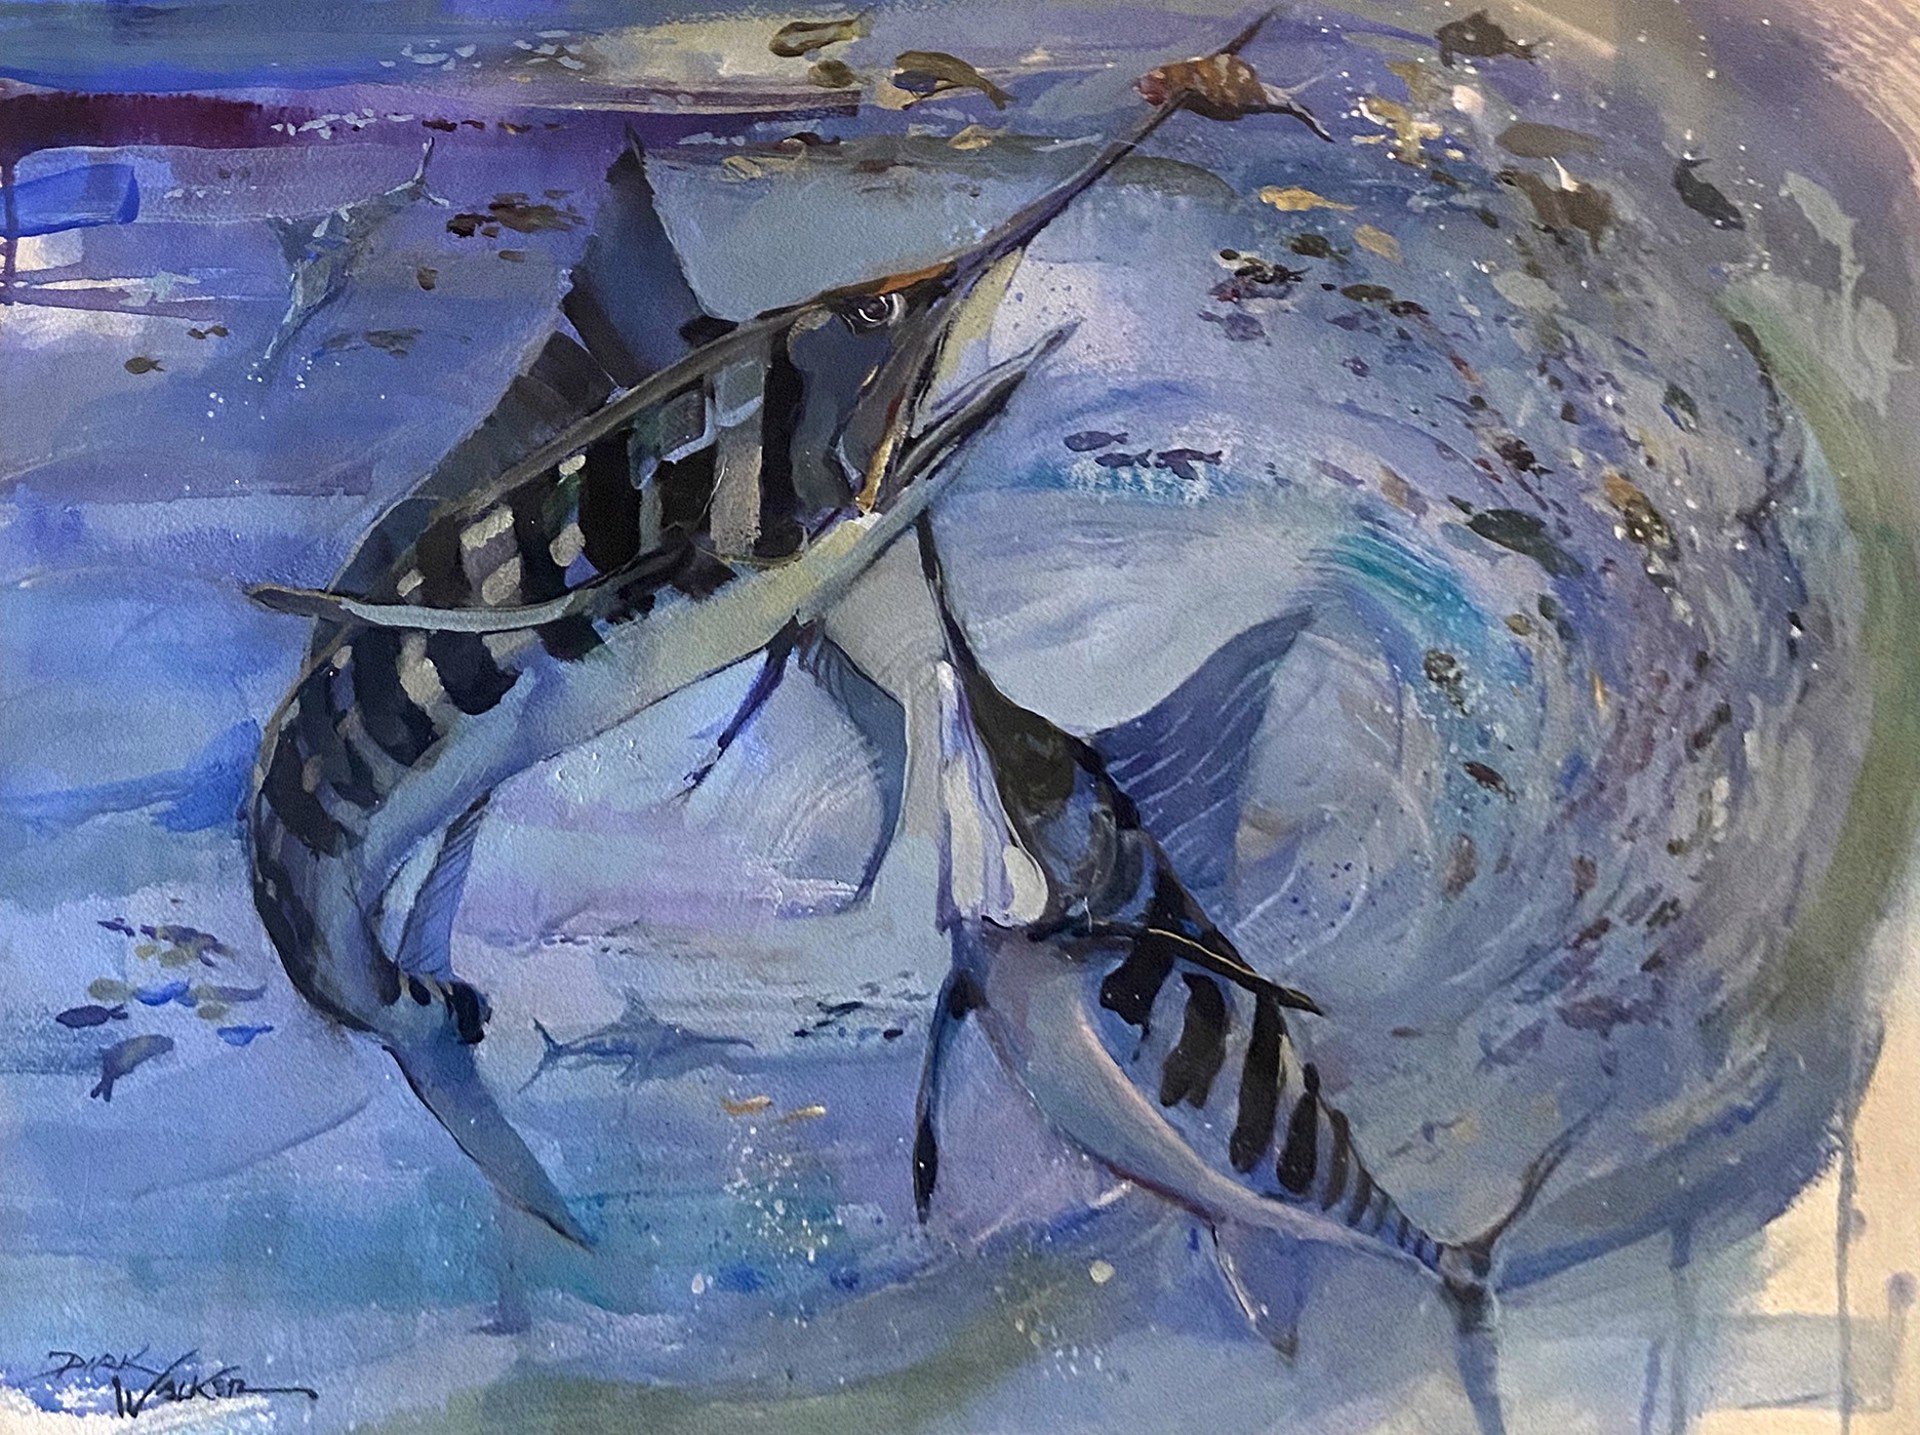 Spear Fishing - Striped Marlin by Dirk Walker